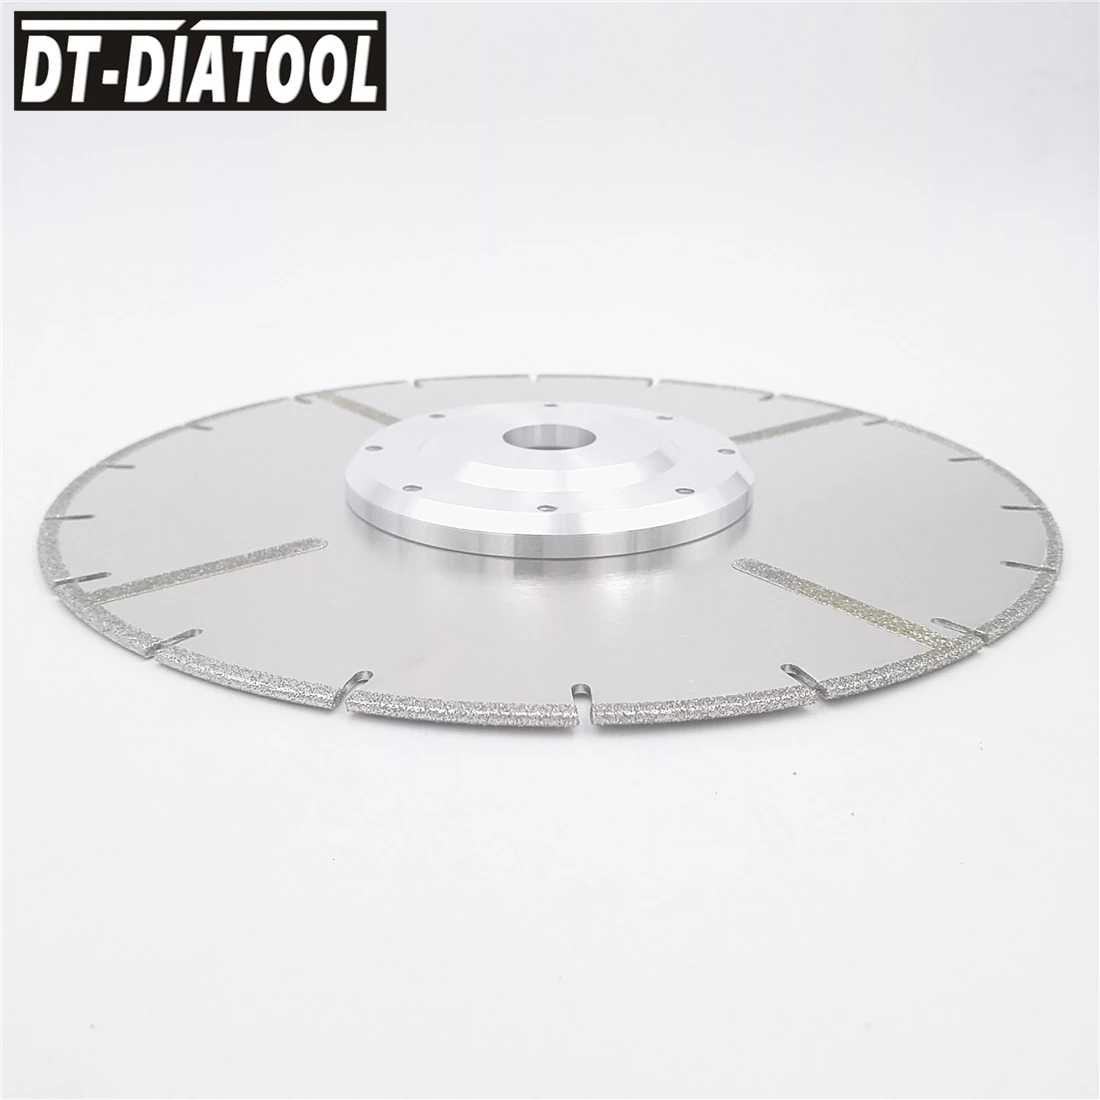 DT-DIATOOL мм 230 мм гальваническим усиленный алмазный режущий диск мм 22,23 мм фланец 9 дюйм(ов) ов) для плитки и мрамора алмазный режущий диск